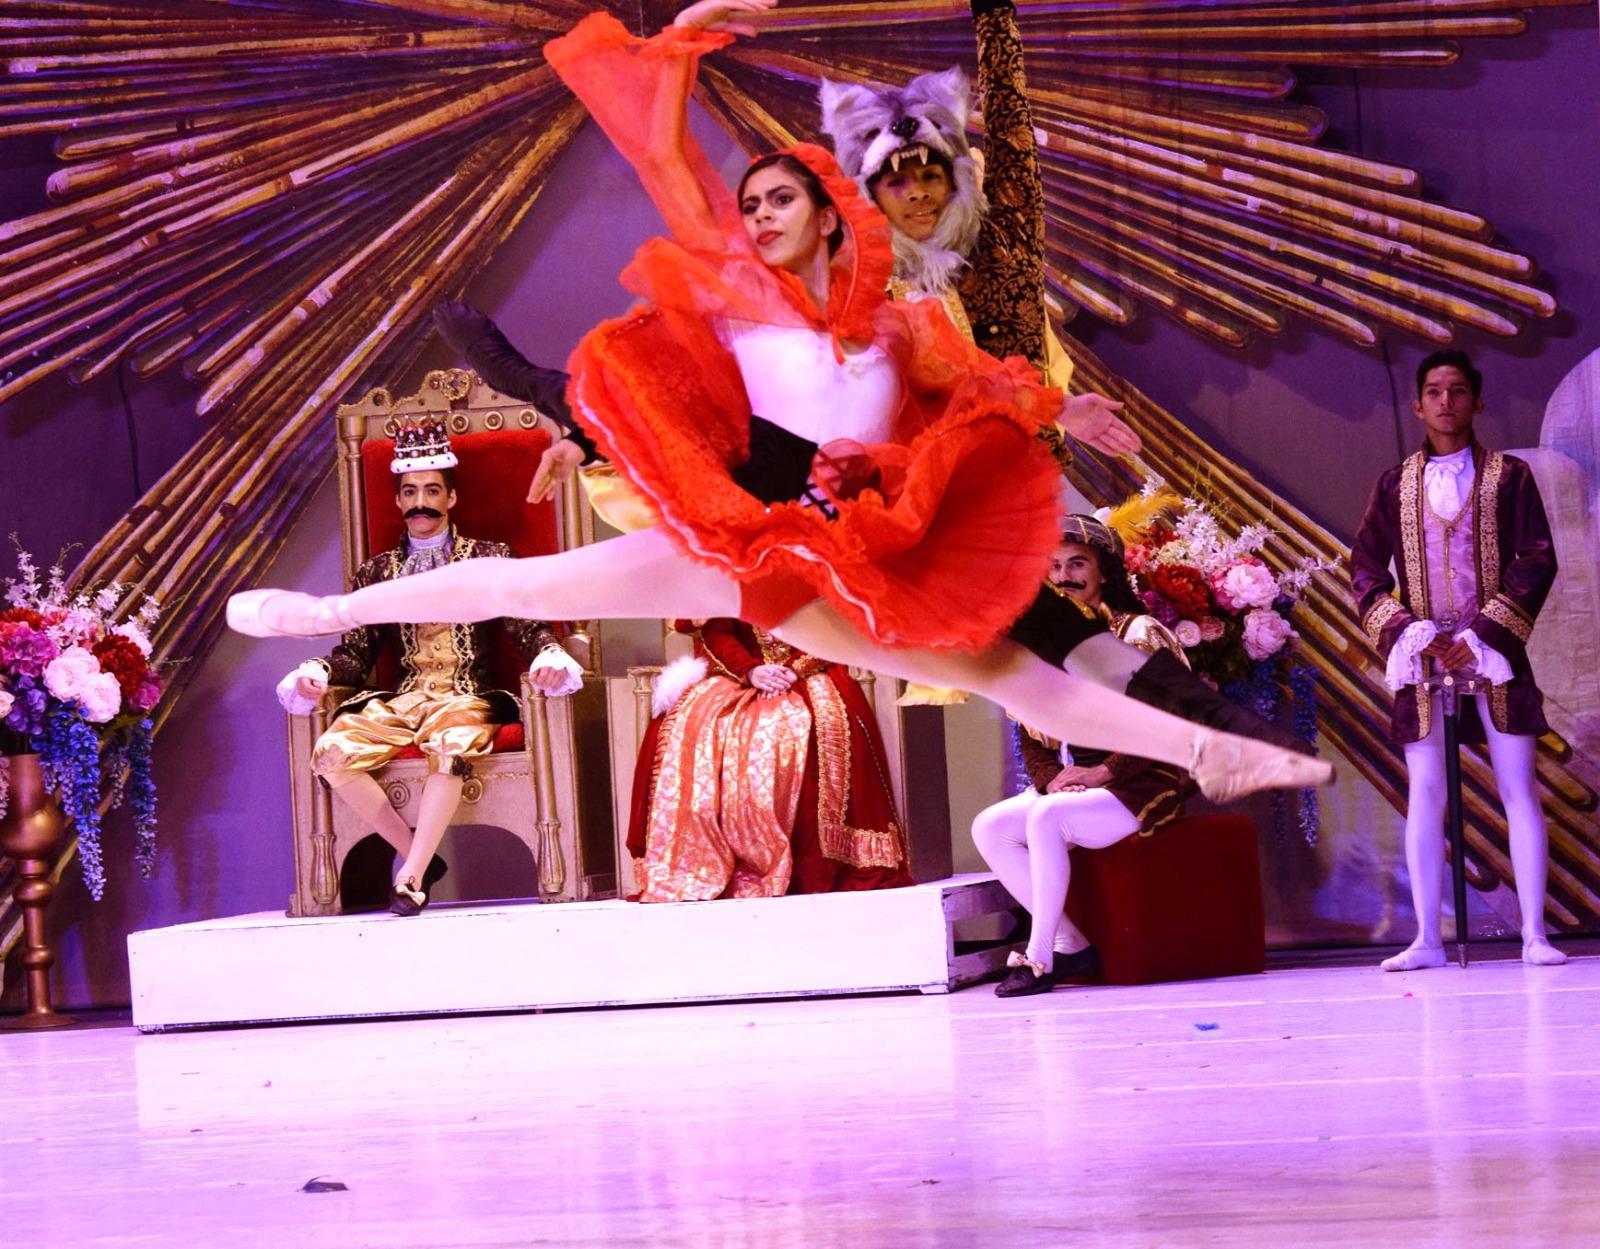 $!La historia del ballet “La Bella Durmiente” se basa en el cuento del mismo nombre escrito por Charles Perrault y los hermanos Grimm.